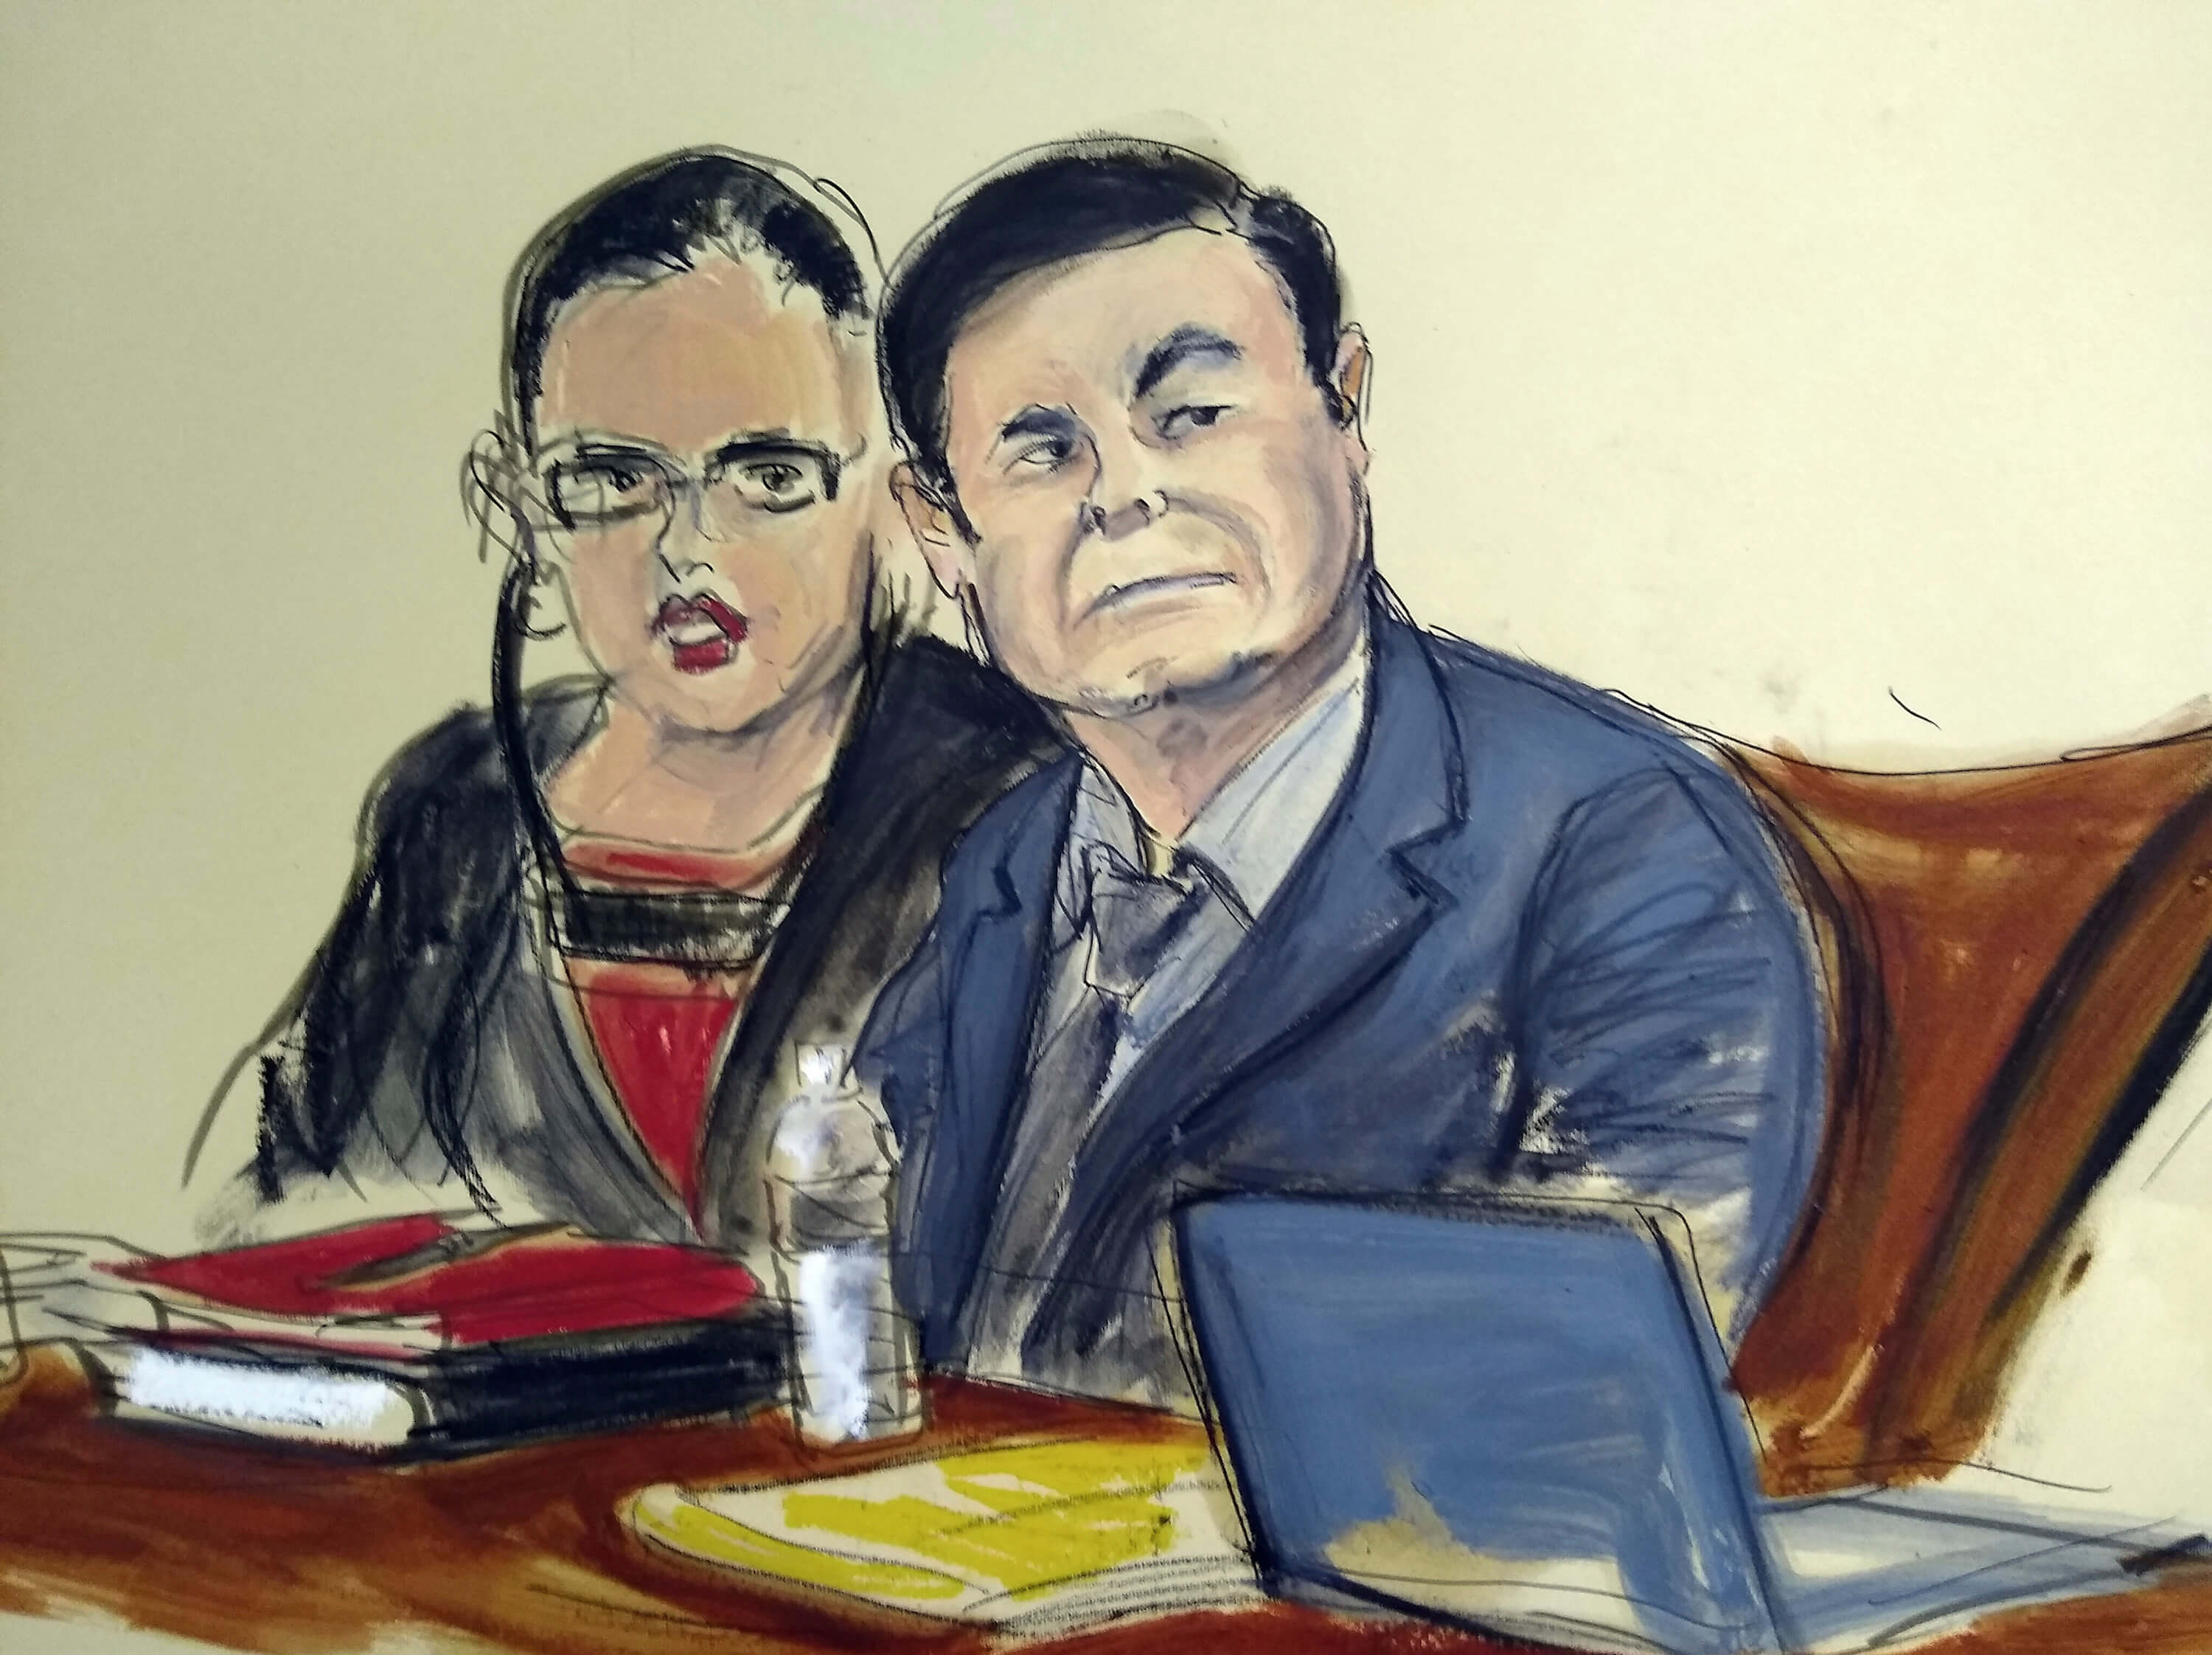 IMAGEN Jurado en juicio de ‘El Chapo’ delibera por segundo día 4 febrero 2019